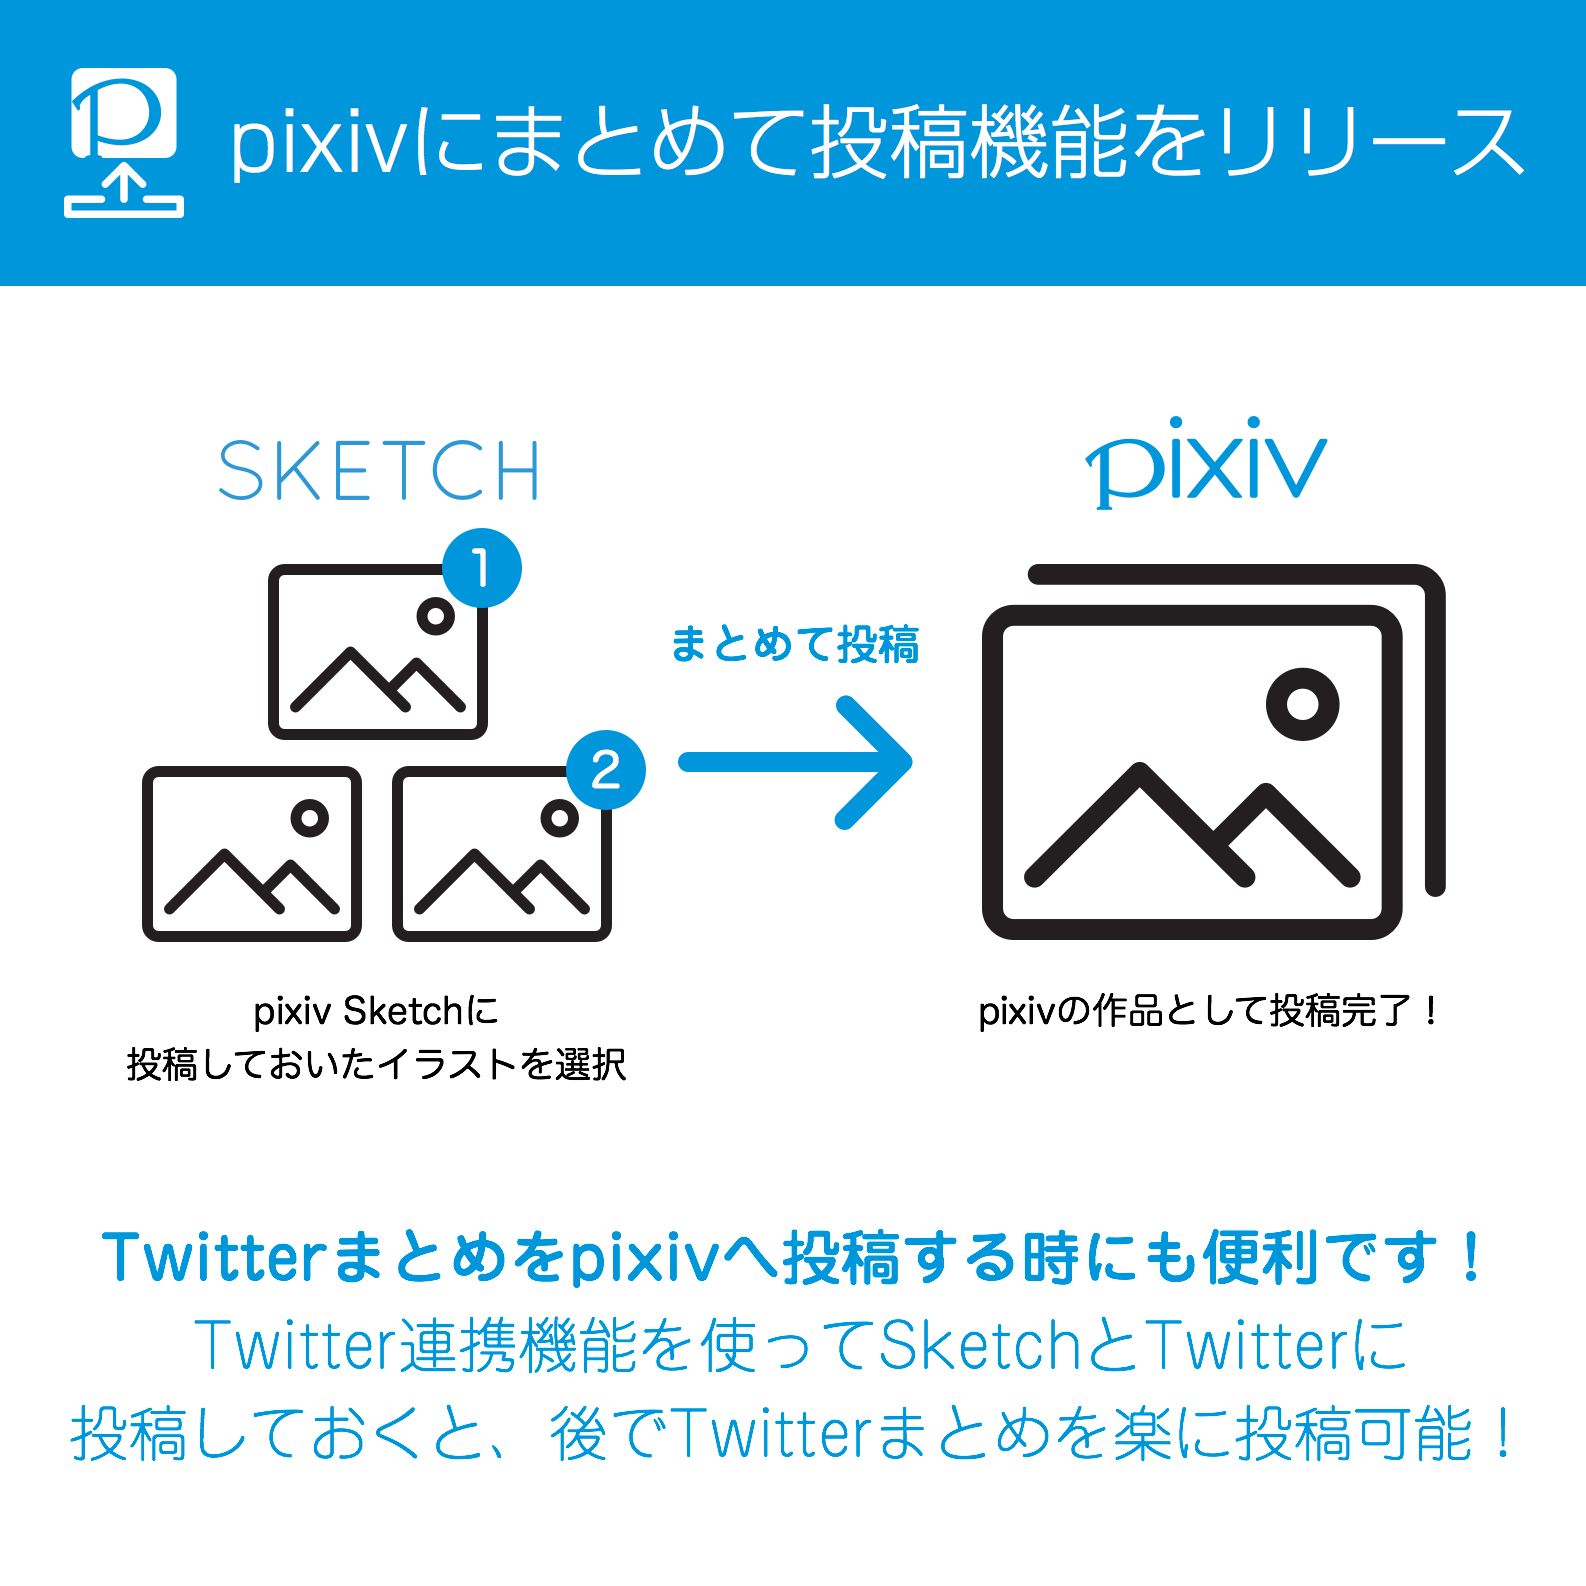 Pixiv Sketch 6周年イラストコンテスト開催中 V Twitter Pixiv Sketchのイラストをまとめてpixiv本体に投稿できる機能をリリース Sketchに投稿したイラストから複数選び 作品情報を入力するだけでpixivに投稿できます T Co Pkaffznody T Co